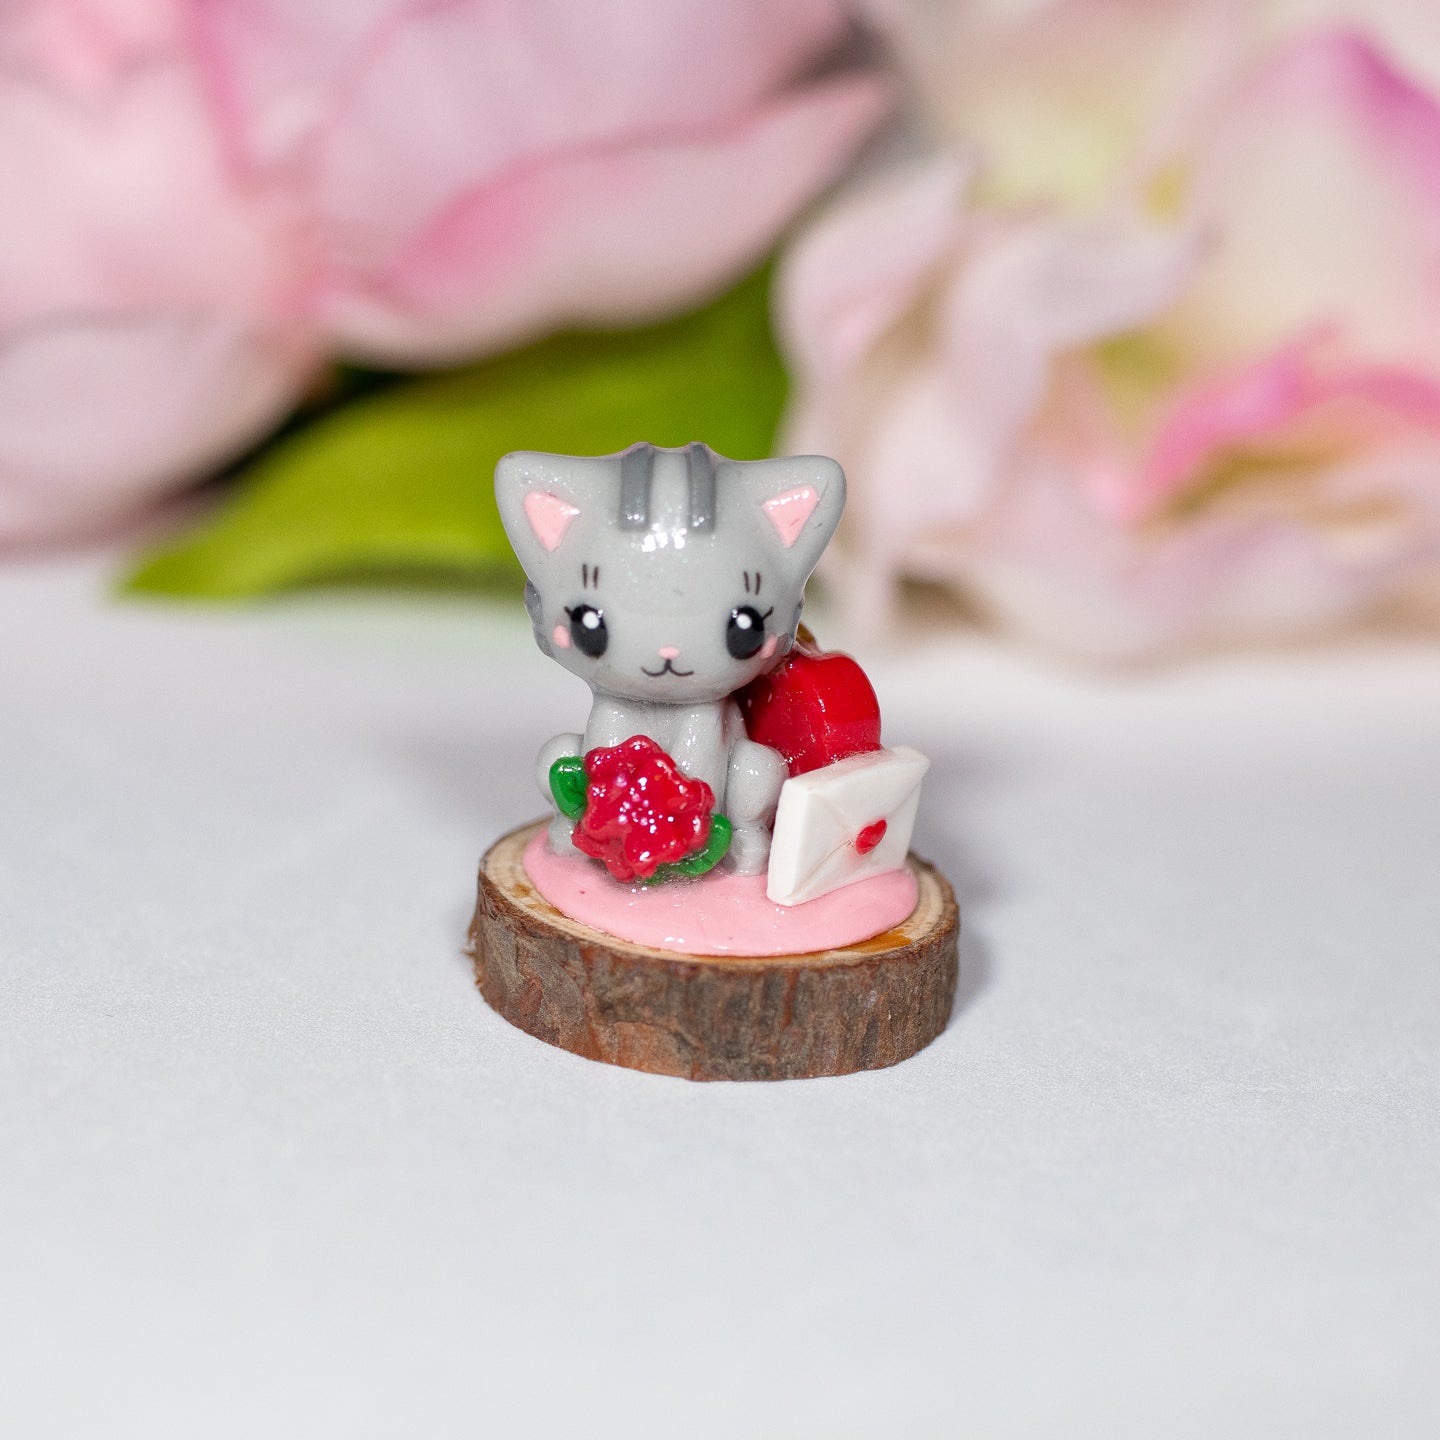 Small Grey Kitty Valentine Figurine - Polymer Clay Figurine